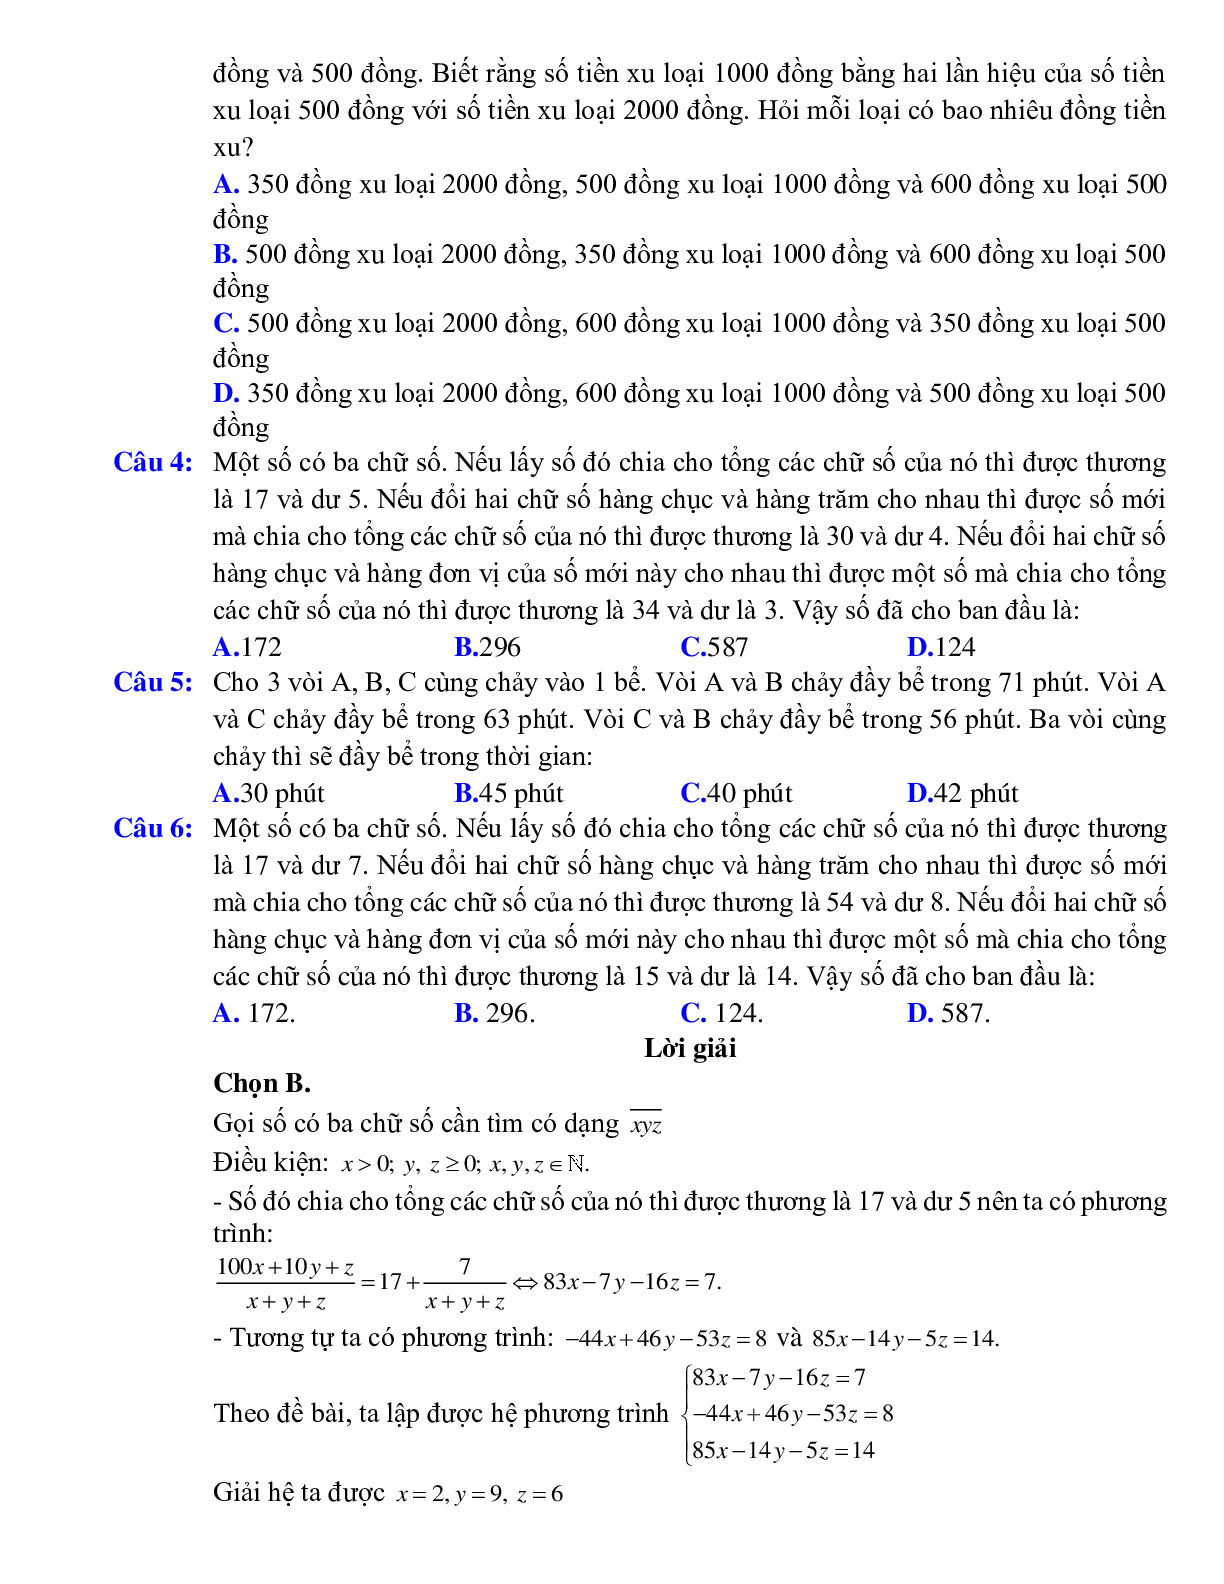 Giải bài toán bằng cách lập hệ phương trình bậc nhất ba ẩn (trang 3)